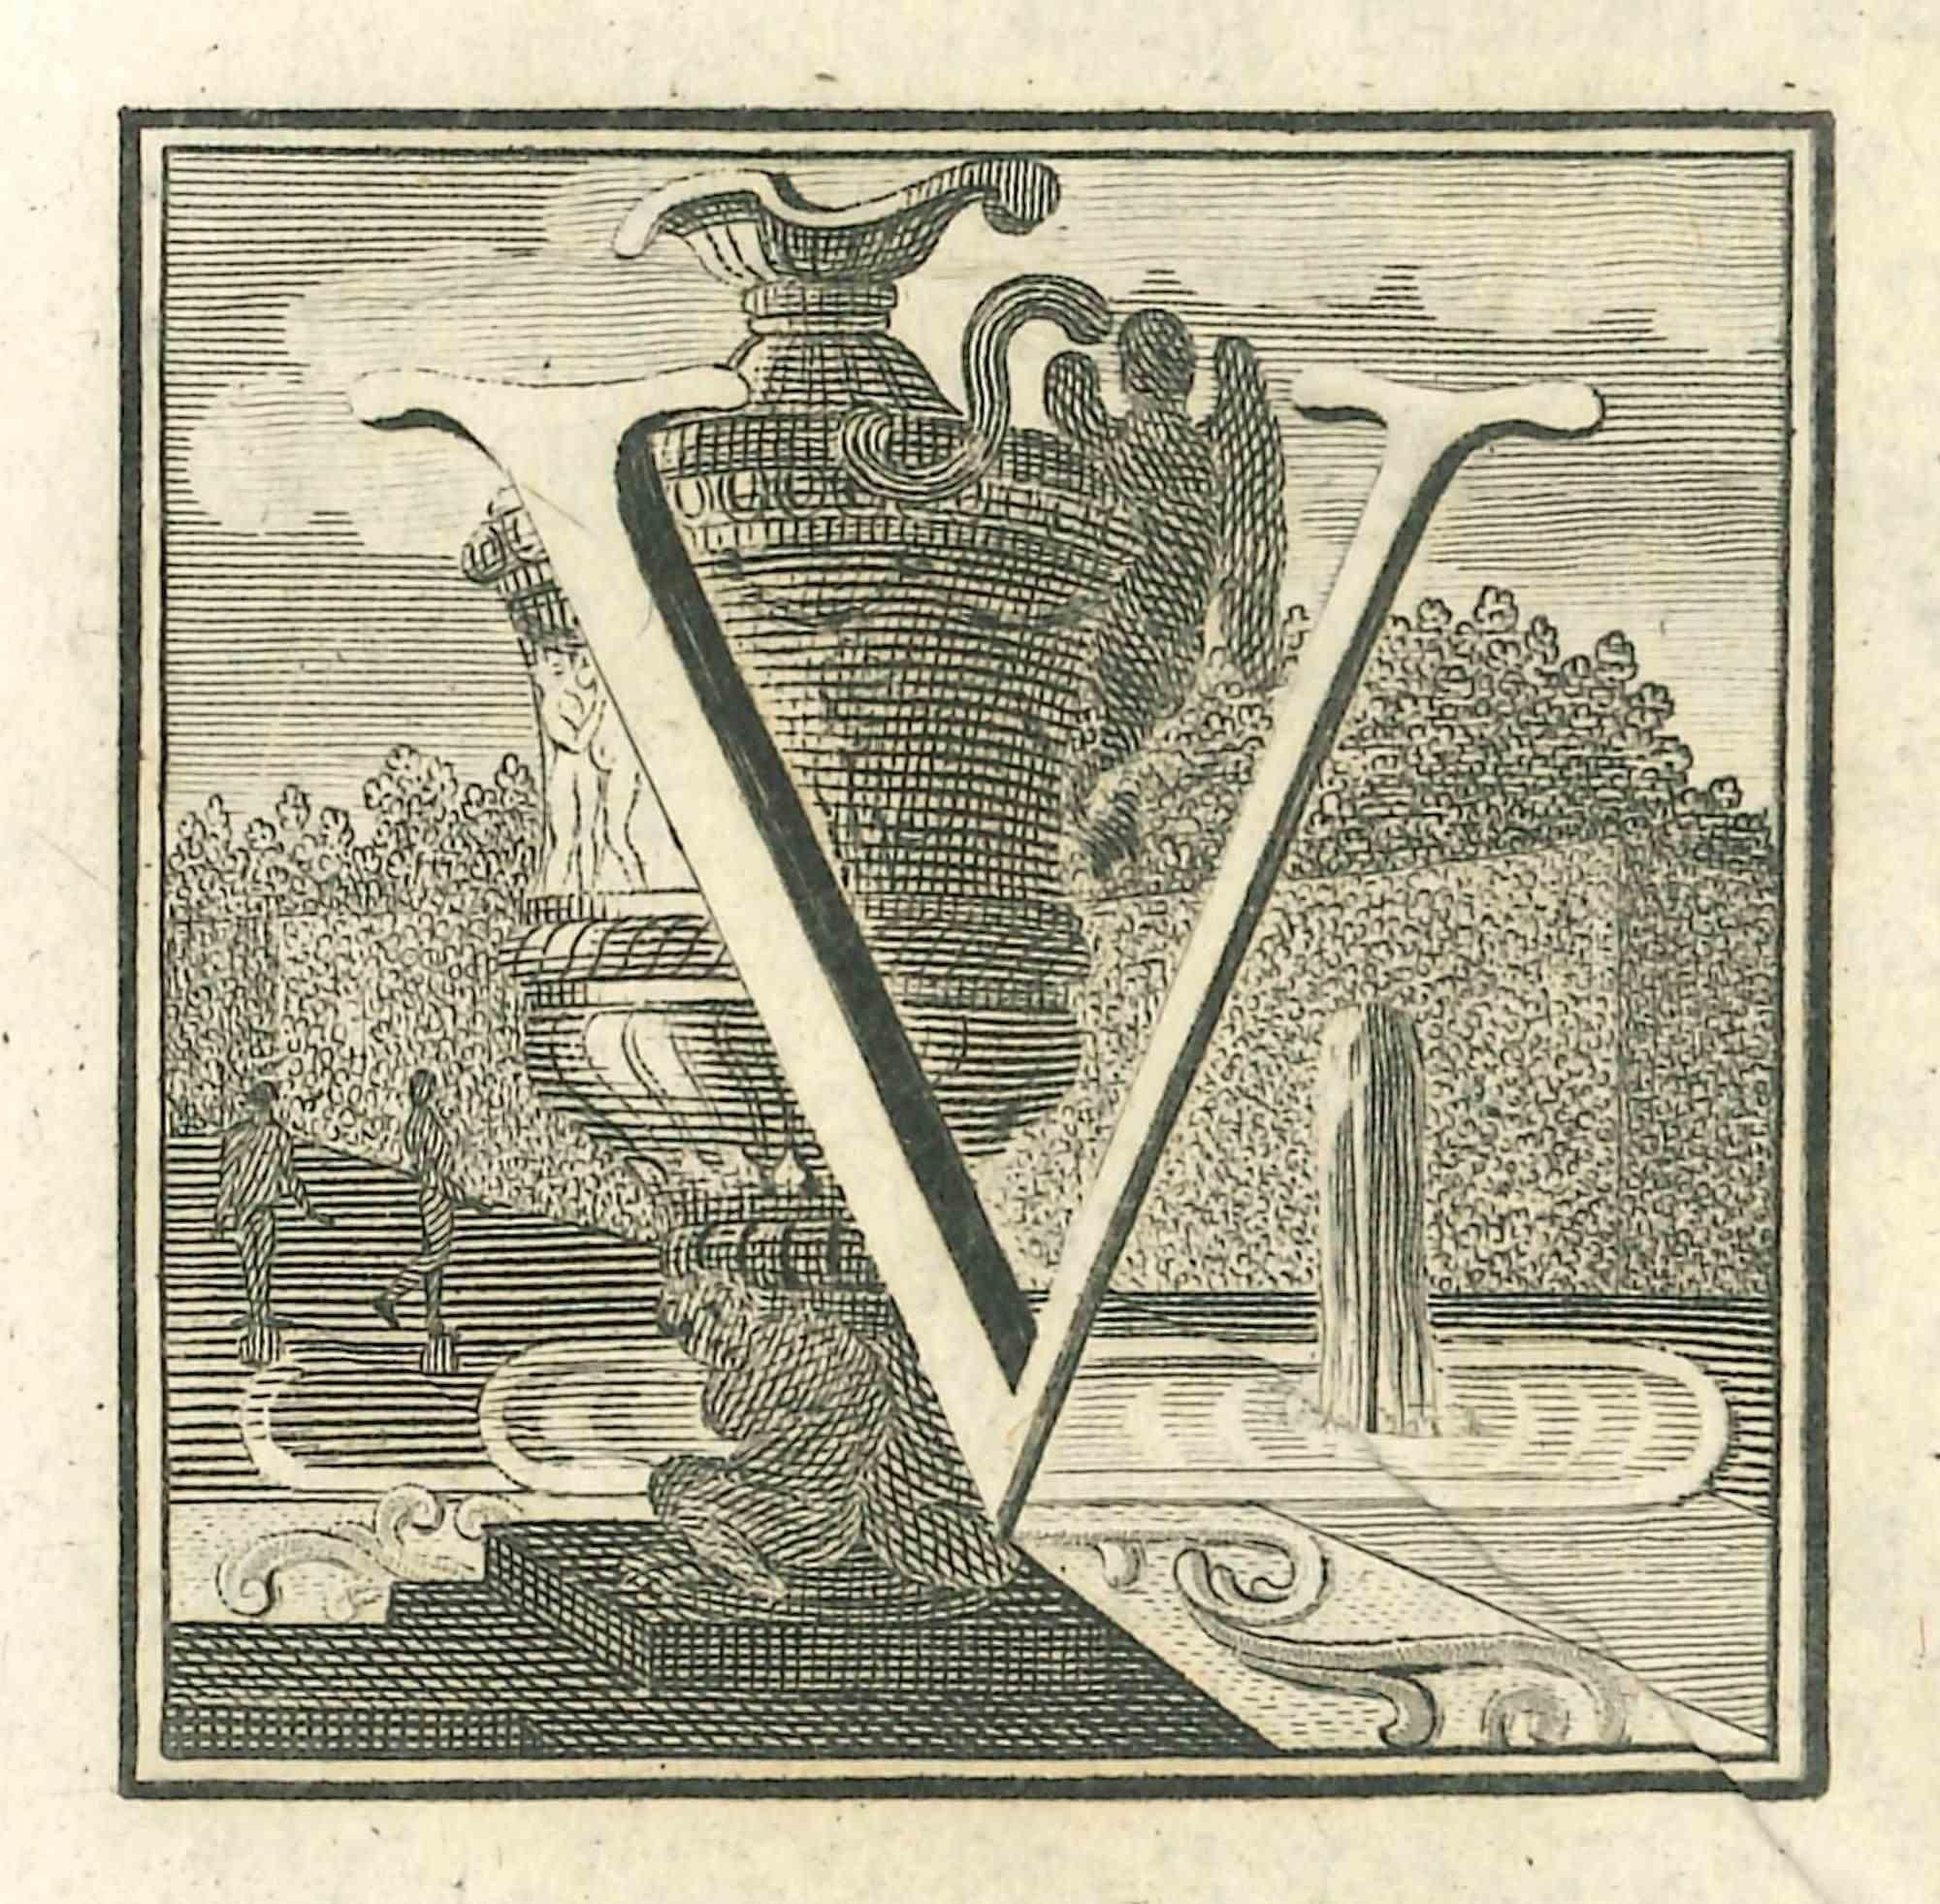 Buchstabe V ist eine Radierung von Luigi Vanvitelli, einem Künstler des 18. Jahrhunderts.

Die Radierung gehört zu der Druckserie "Antiquities of Herculaneum Exposed" (Originaltitel: "Le Antichità di Ercolano Esposte"), einem achtbändigen Band mit